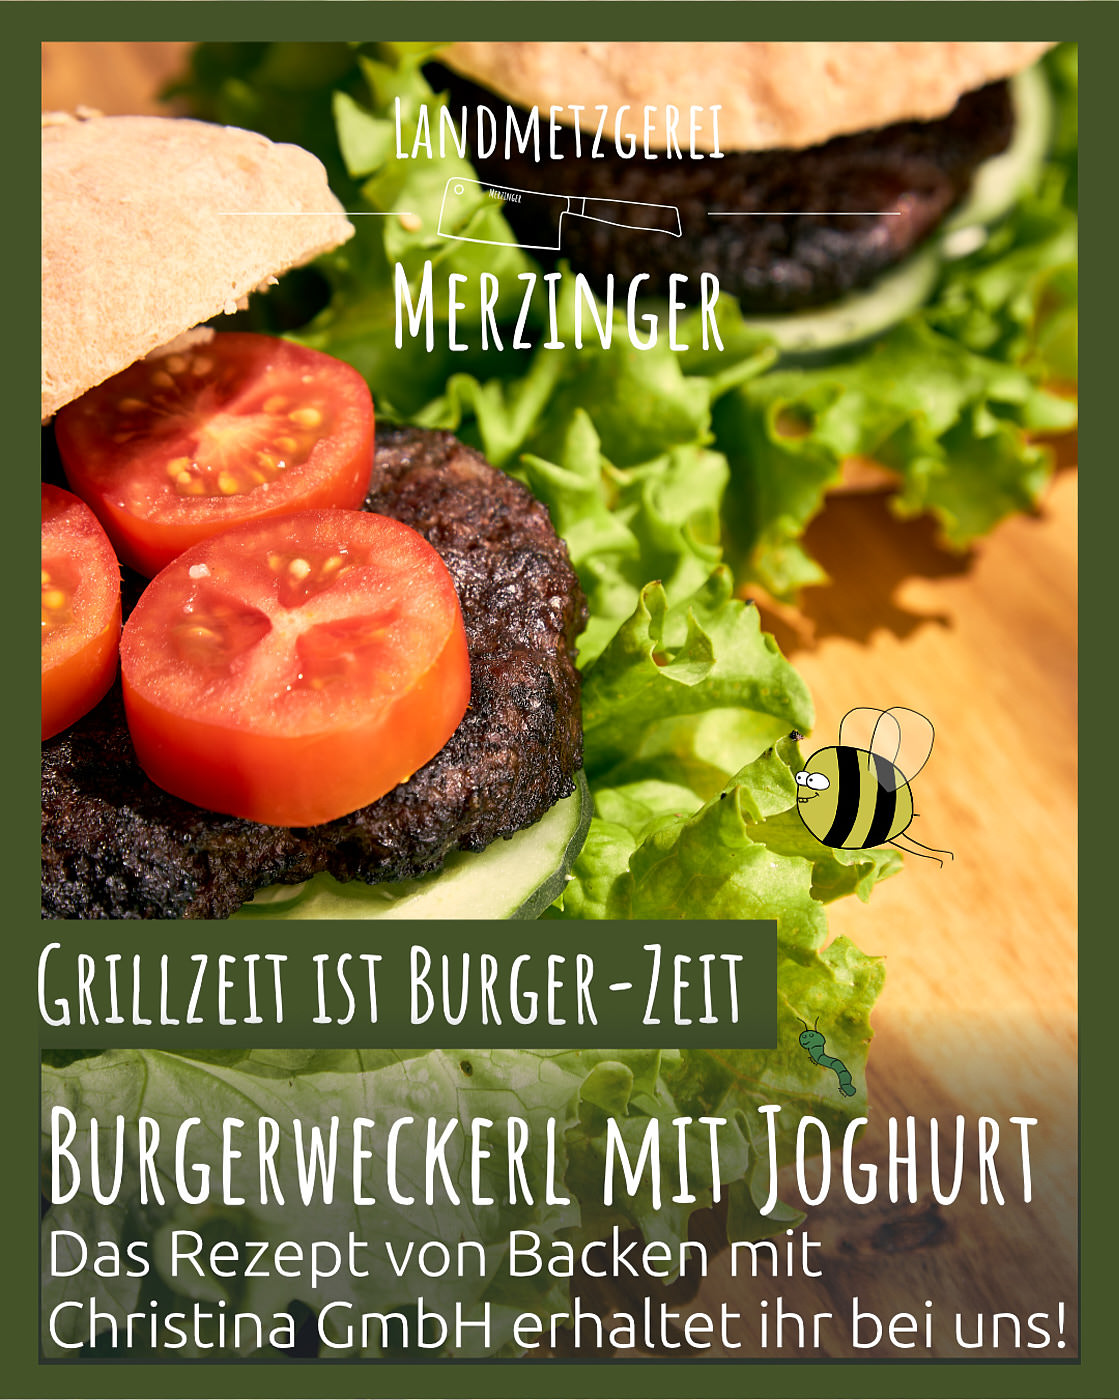 Merzinger - Landmetzgerei Food Photography - ImagoSTUDIO⎪love for detail - ImagoSTUDIO - Food Photography -